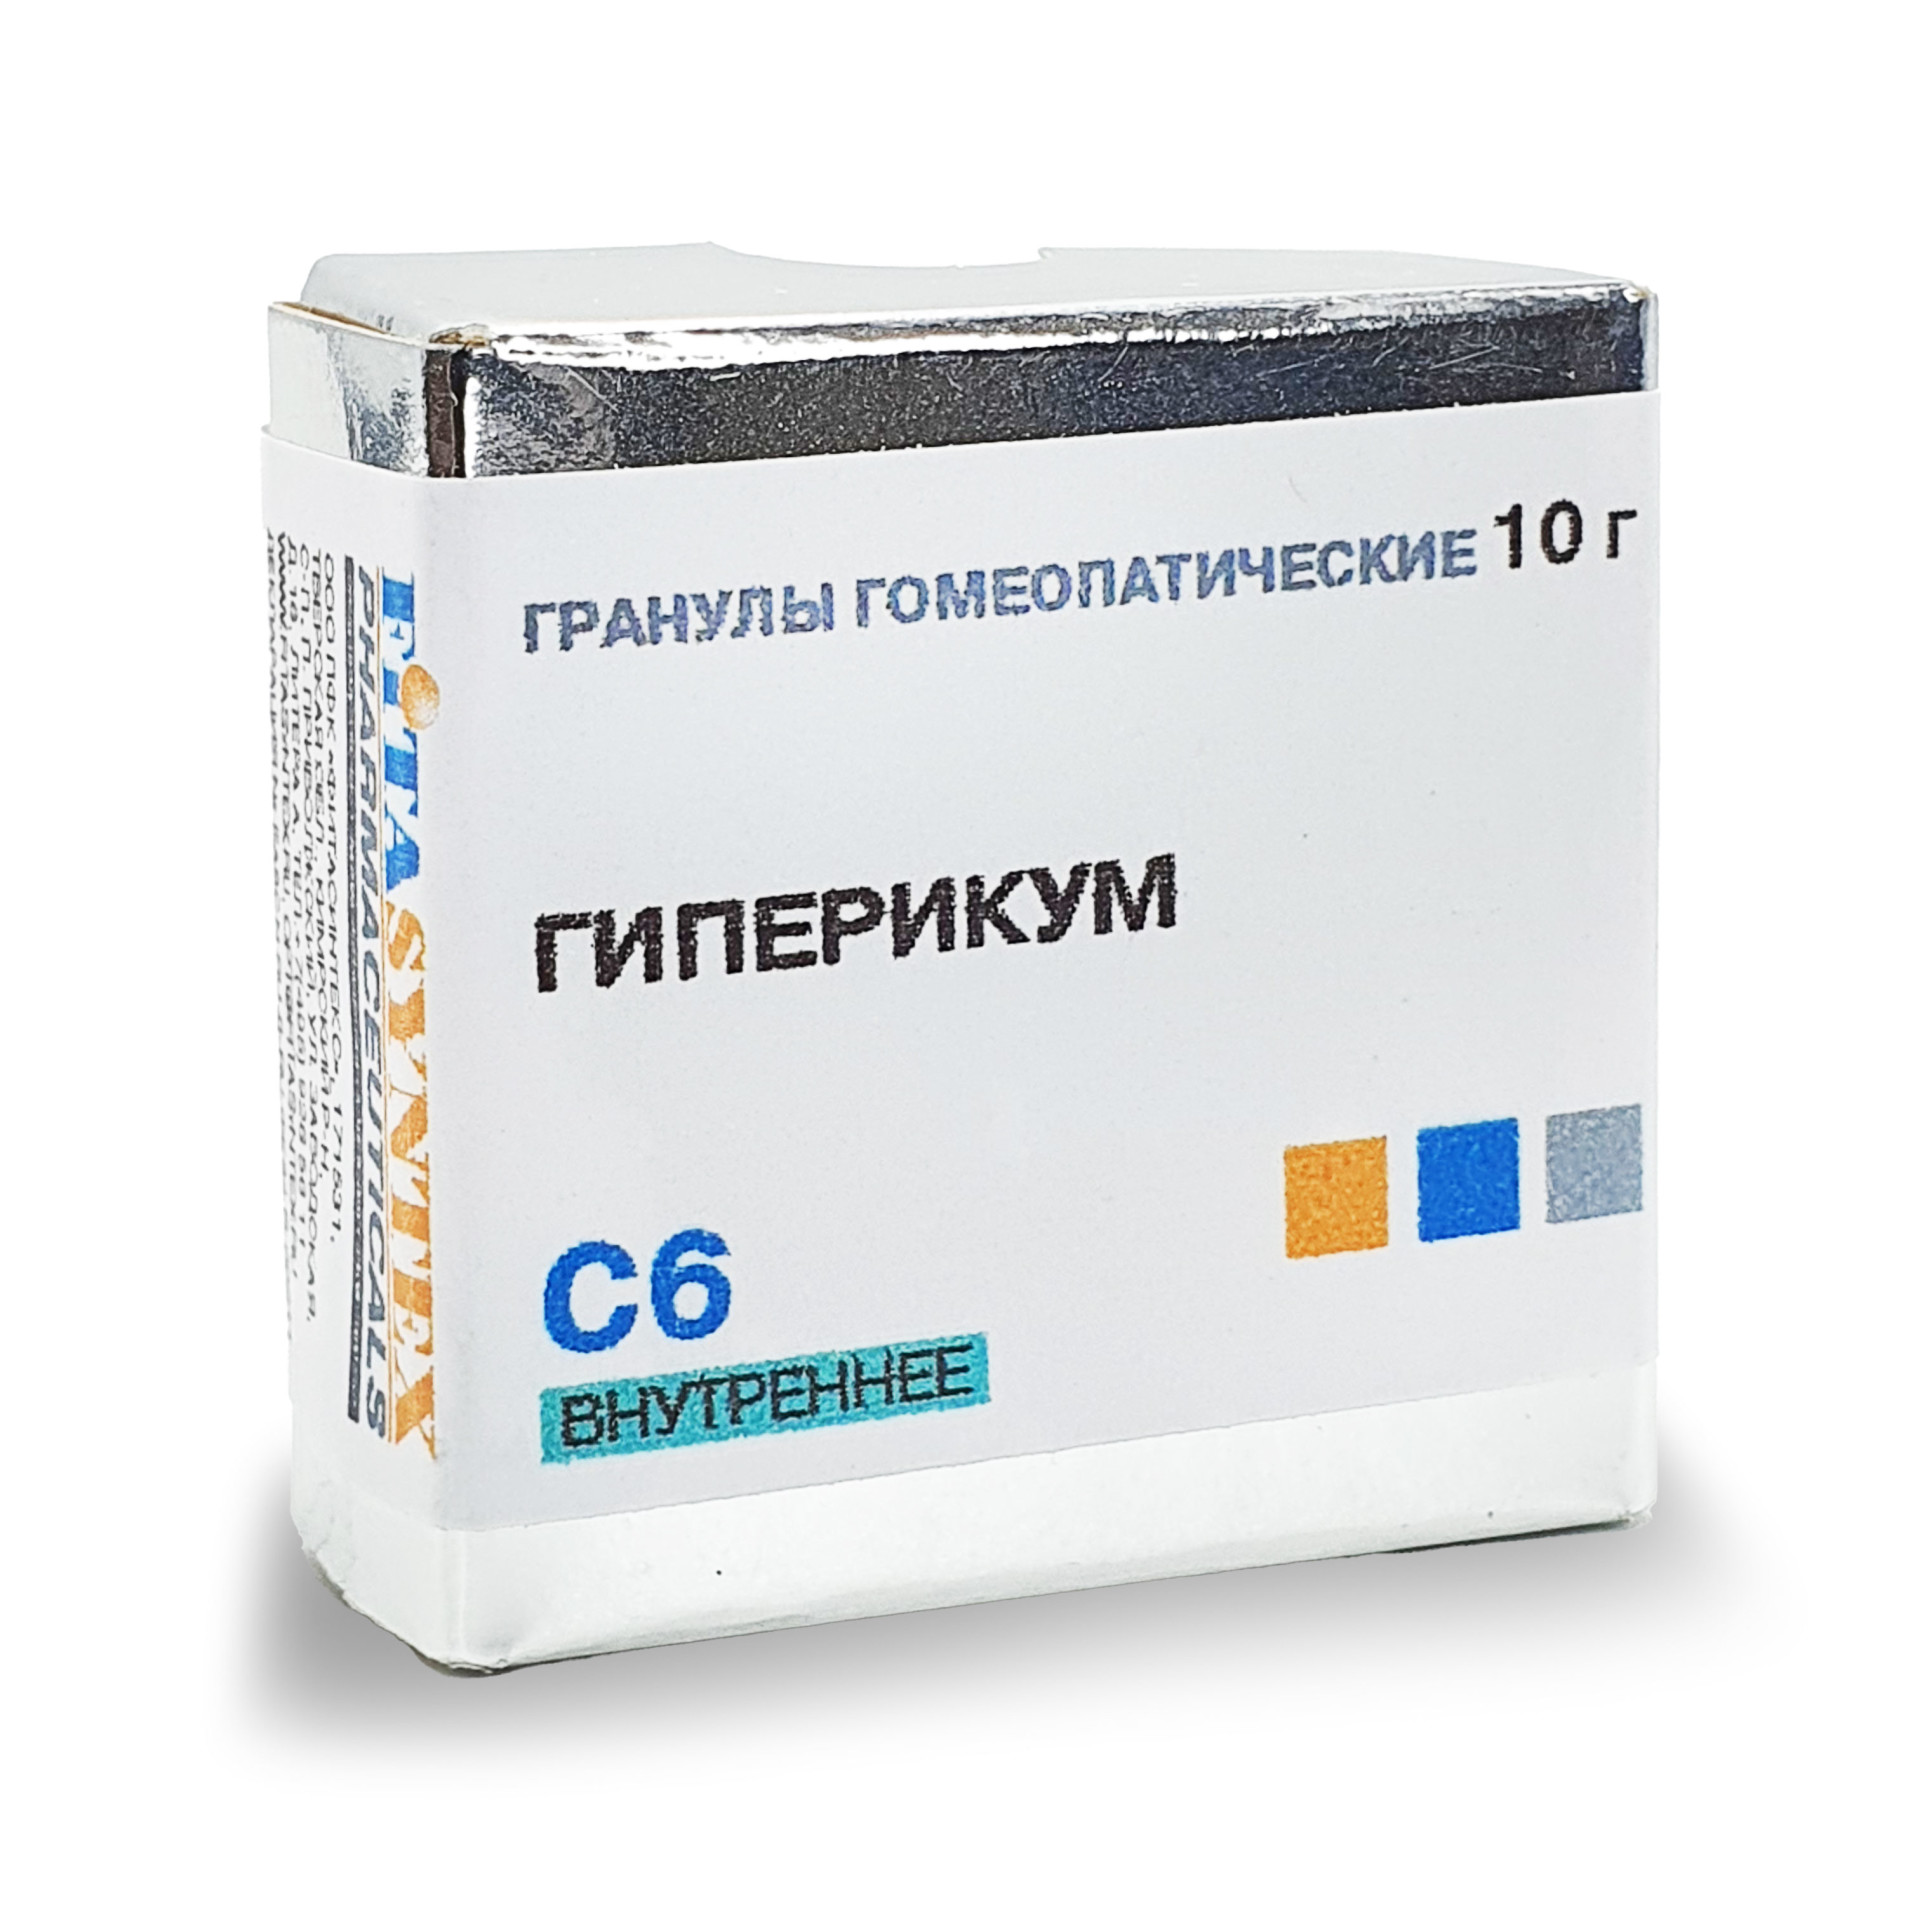 Гиперикум (Гиперикум Перфоратум) С-6 гранулы 10г  в Сланцах по .